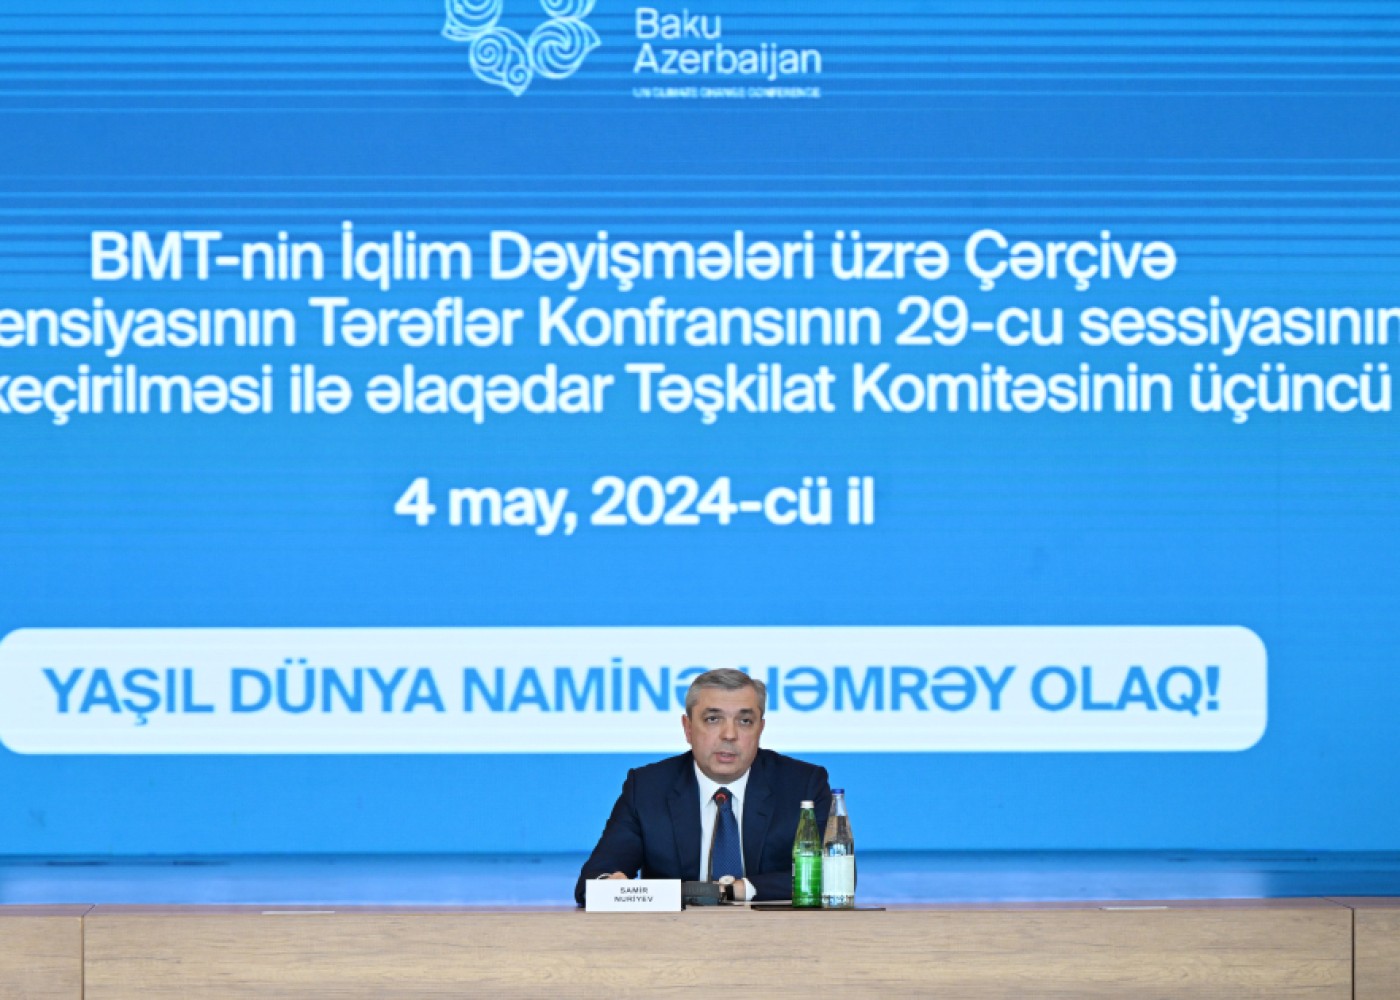 COP29 ilə əlaqədar Təşkilat Komitəsinin üçüncü iclası keçirilib -FOTOLAR